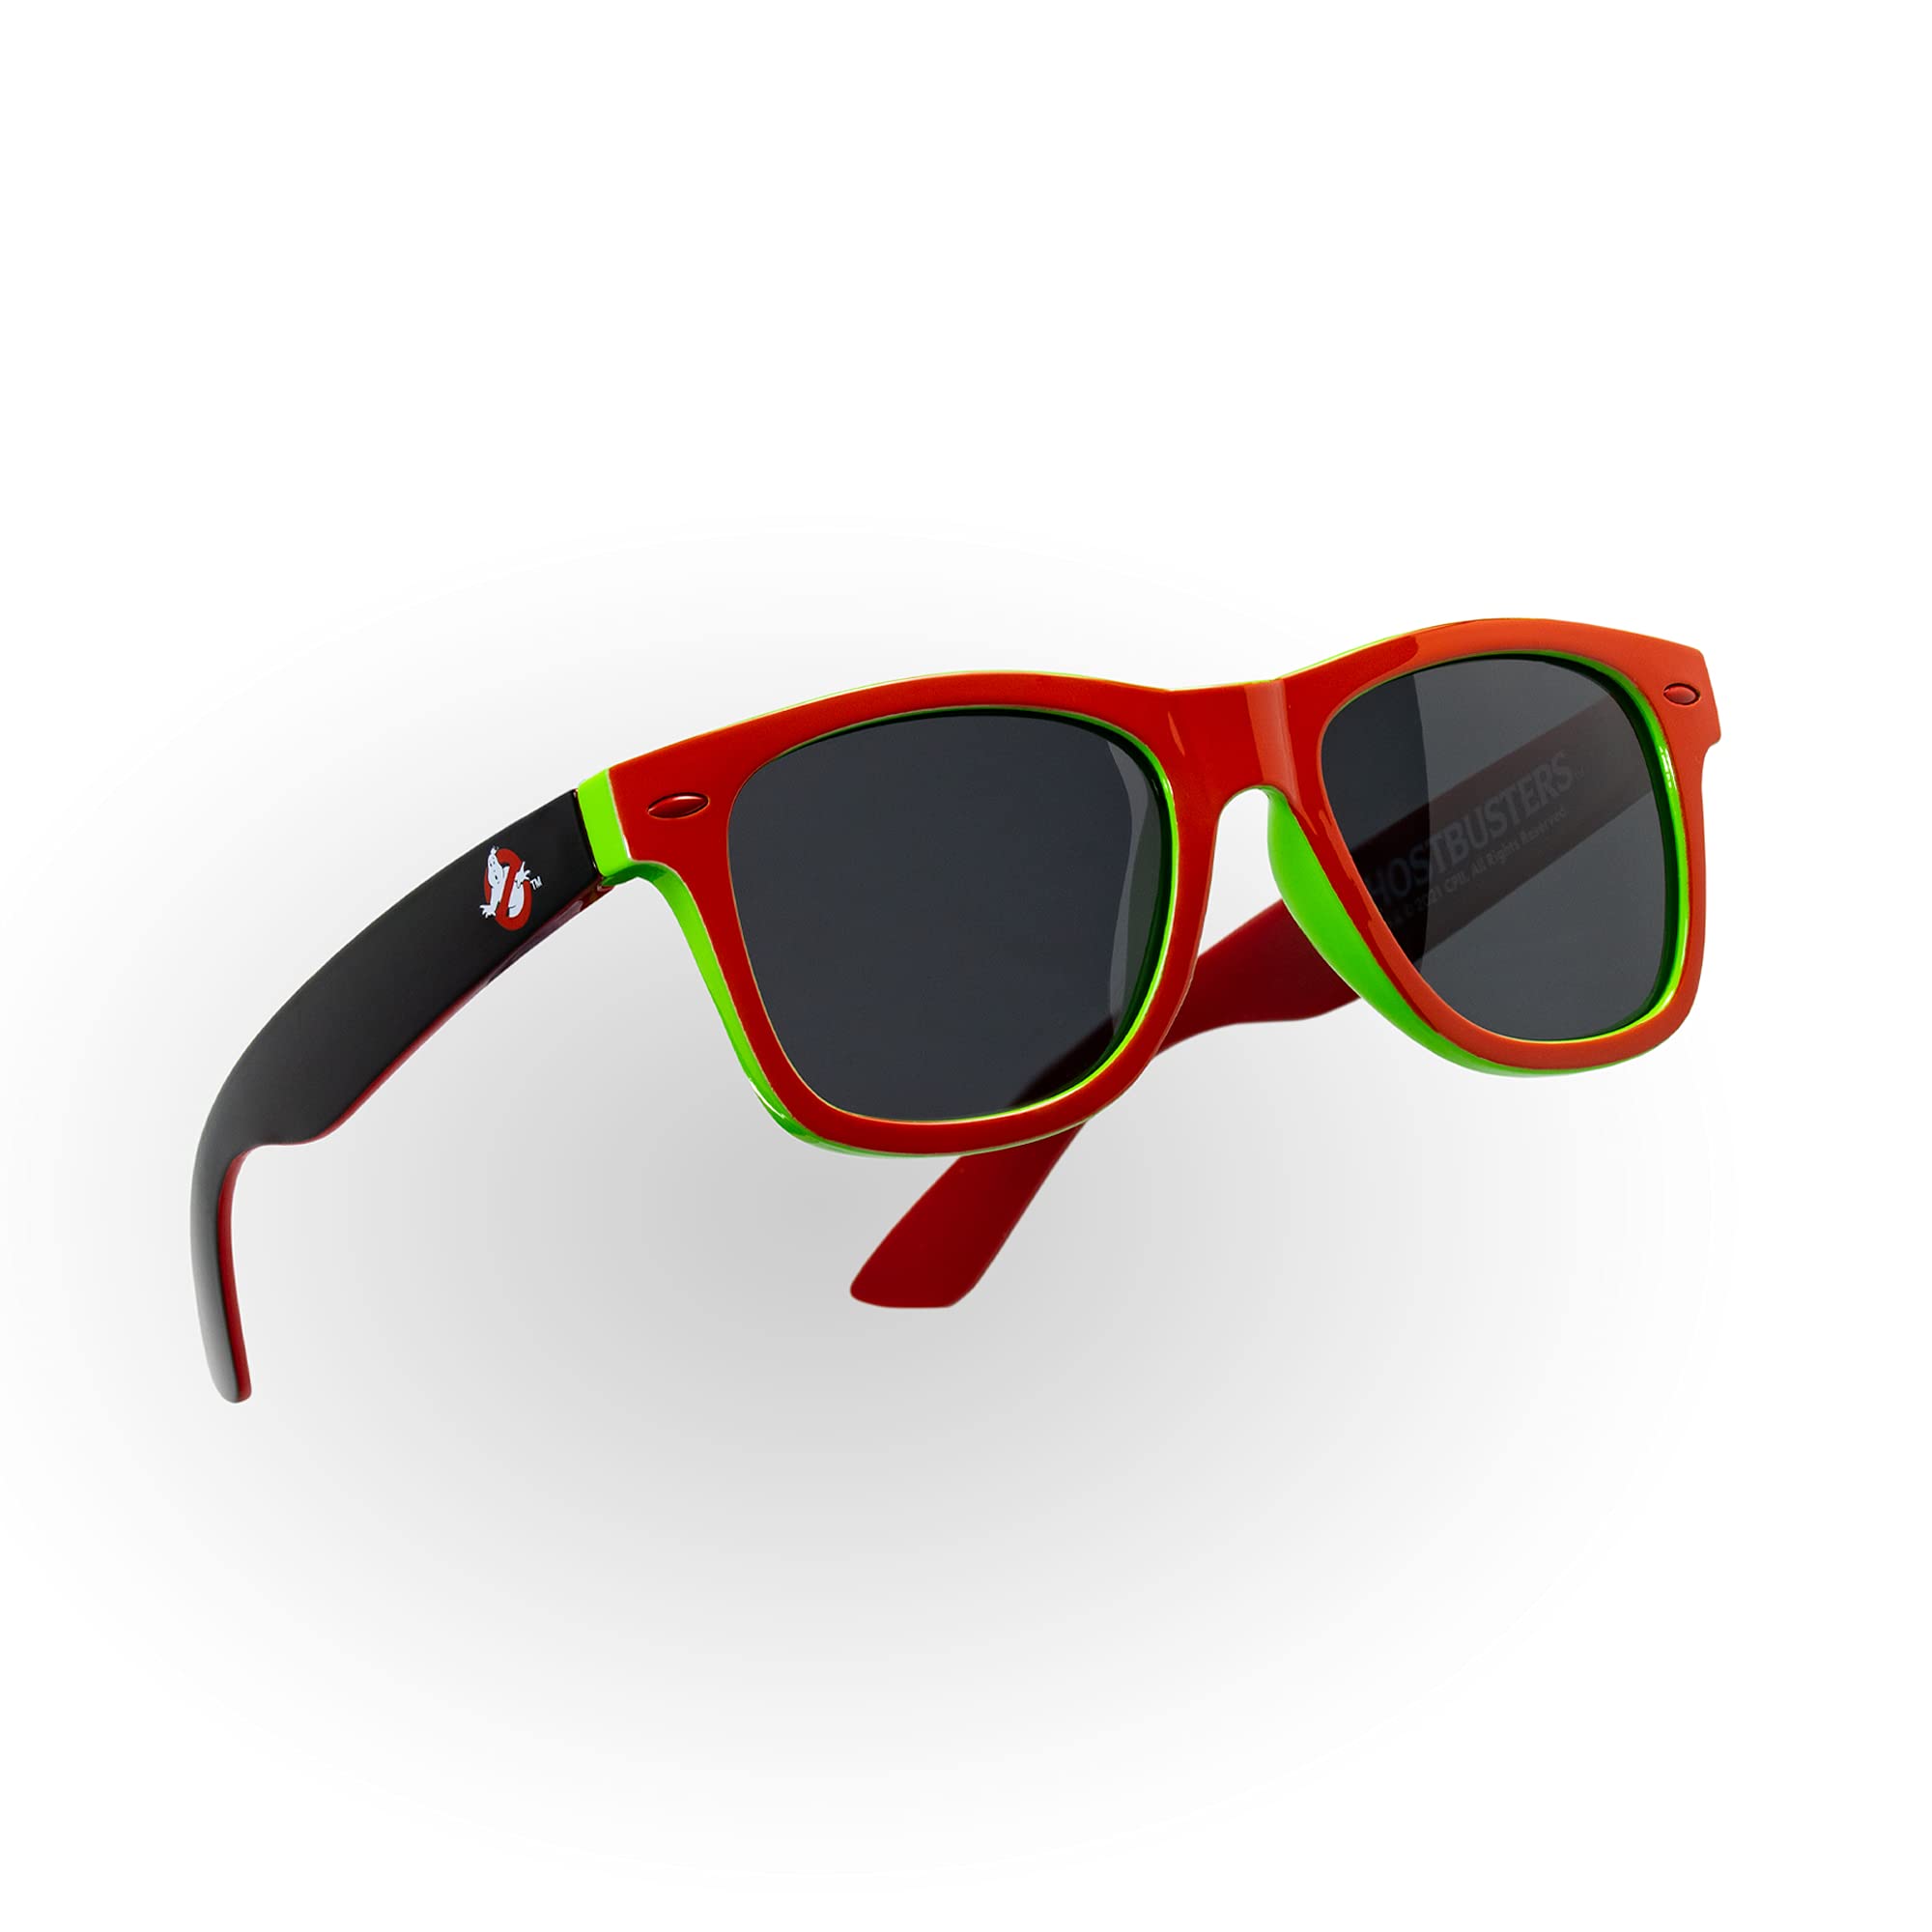 numskull Unisex Offizielle Sonnenbrille, Leichter Rahmen mit Ghostbusters-Design in Schwarz und Grün, Entworfen und entwickelt